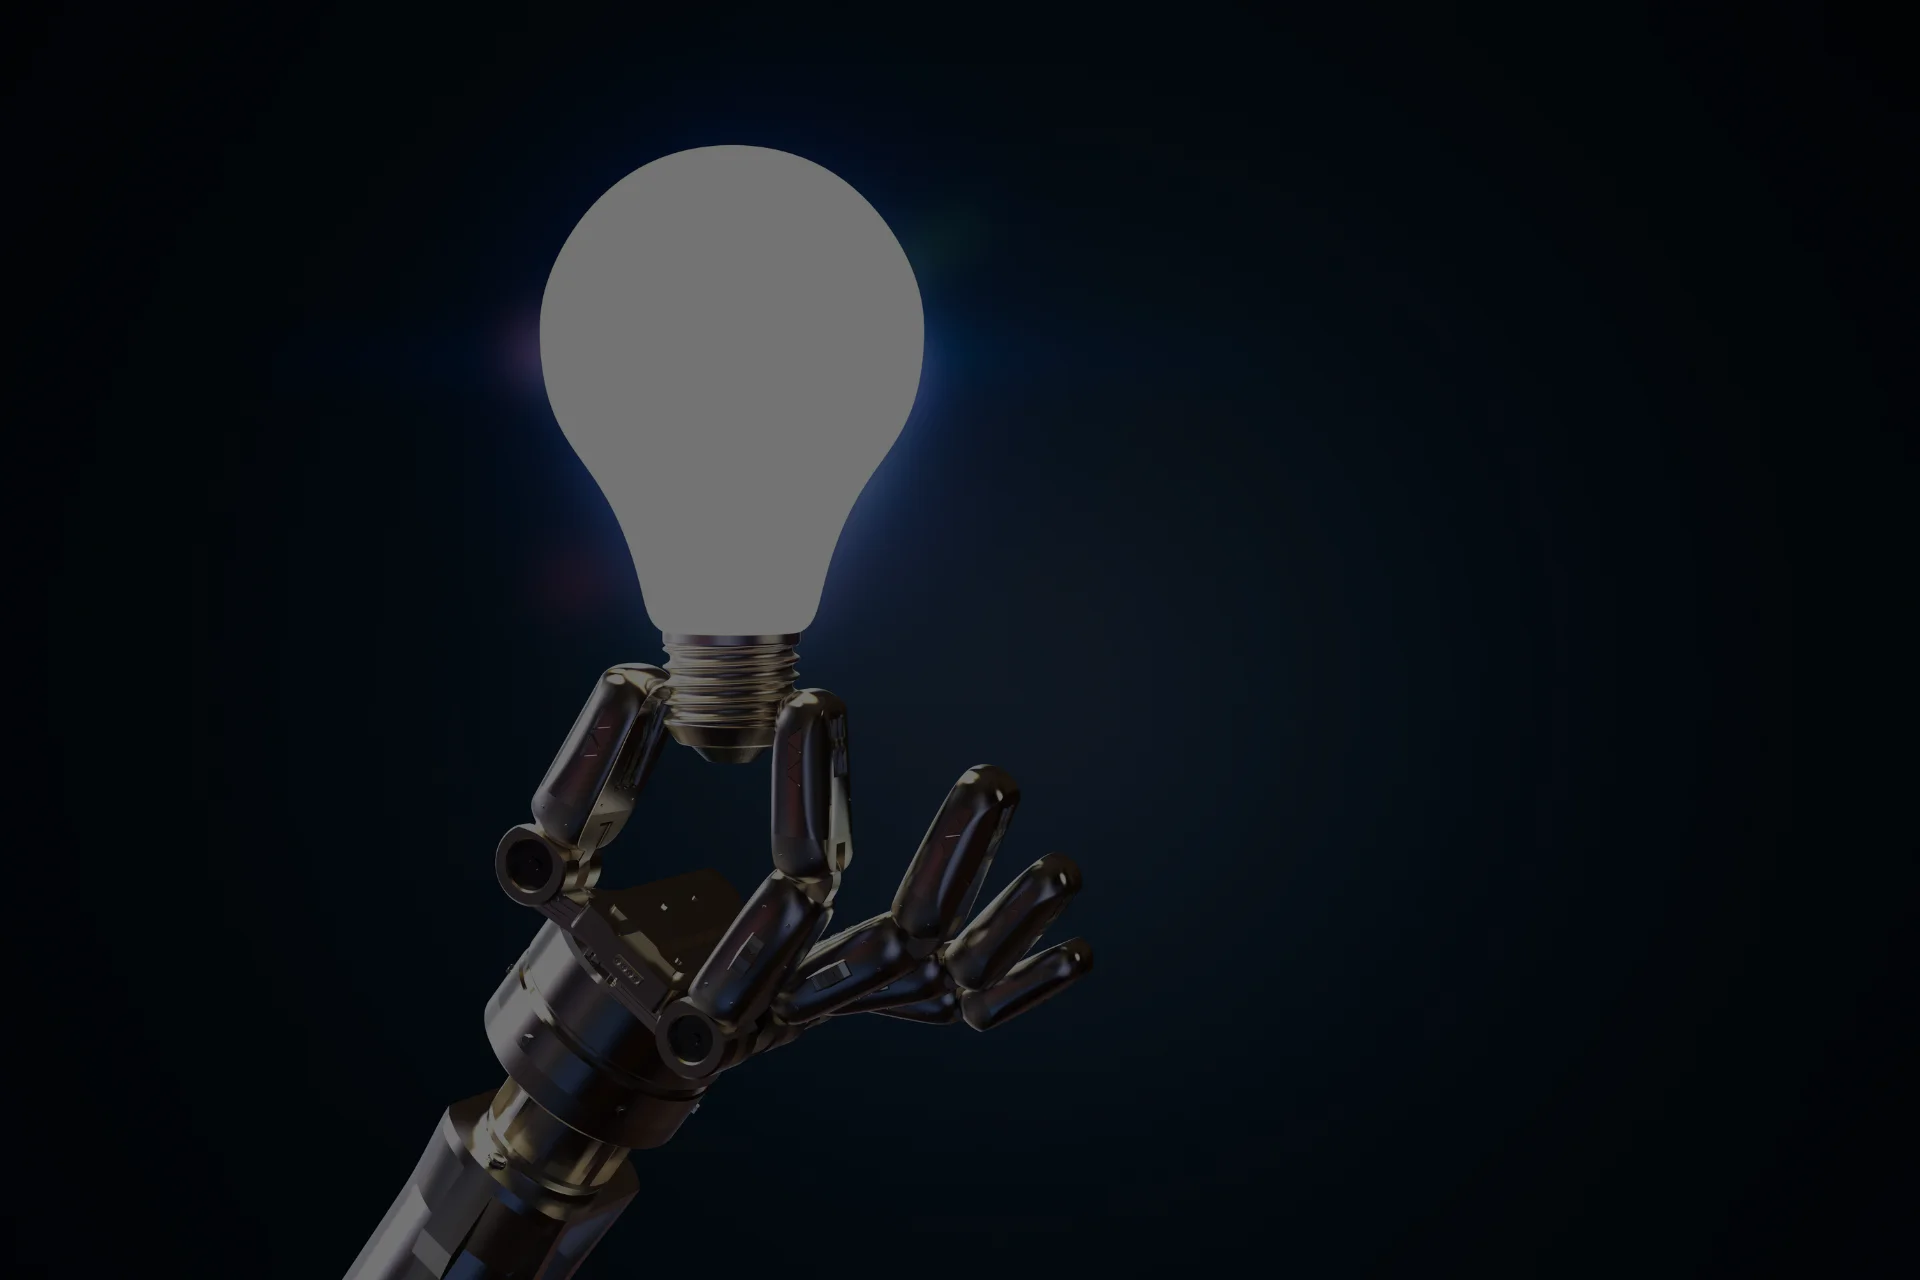 robot holding light bulb